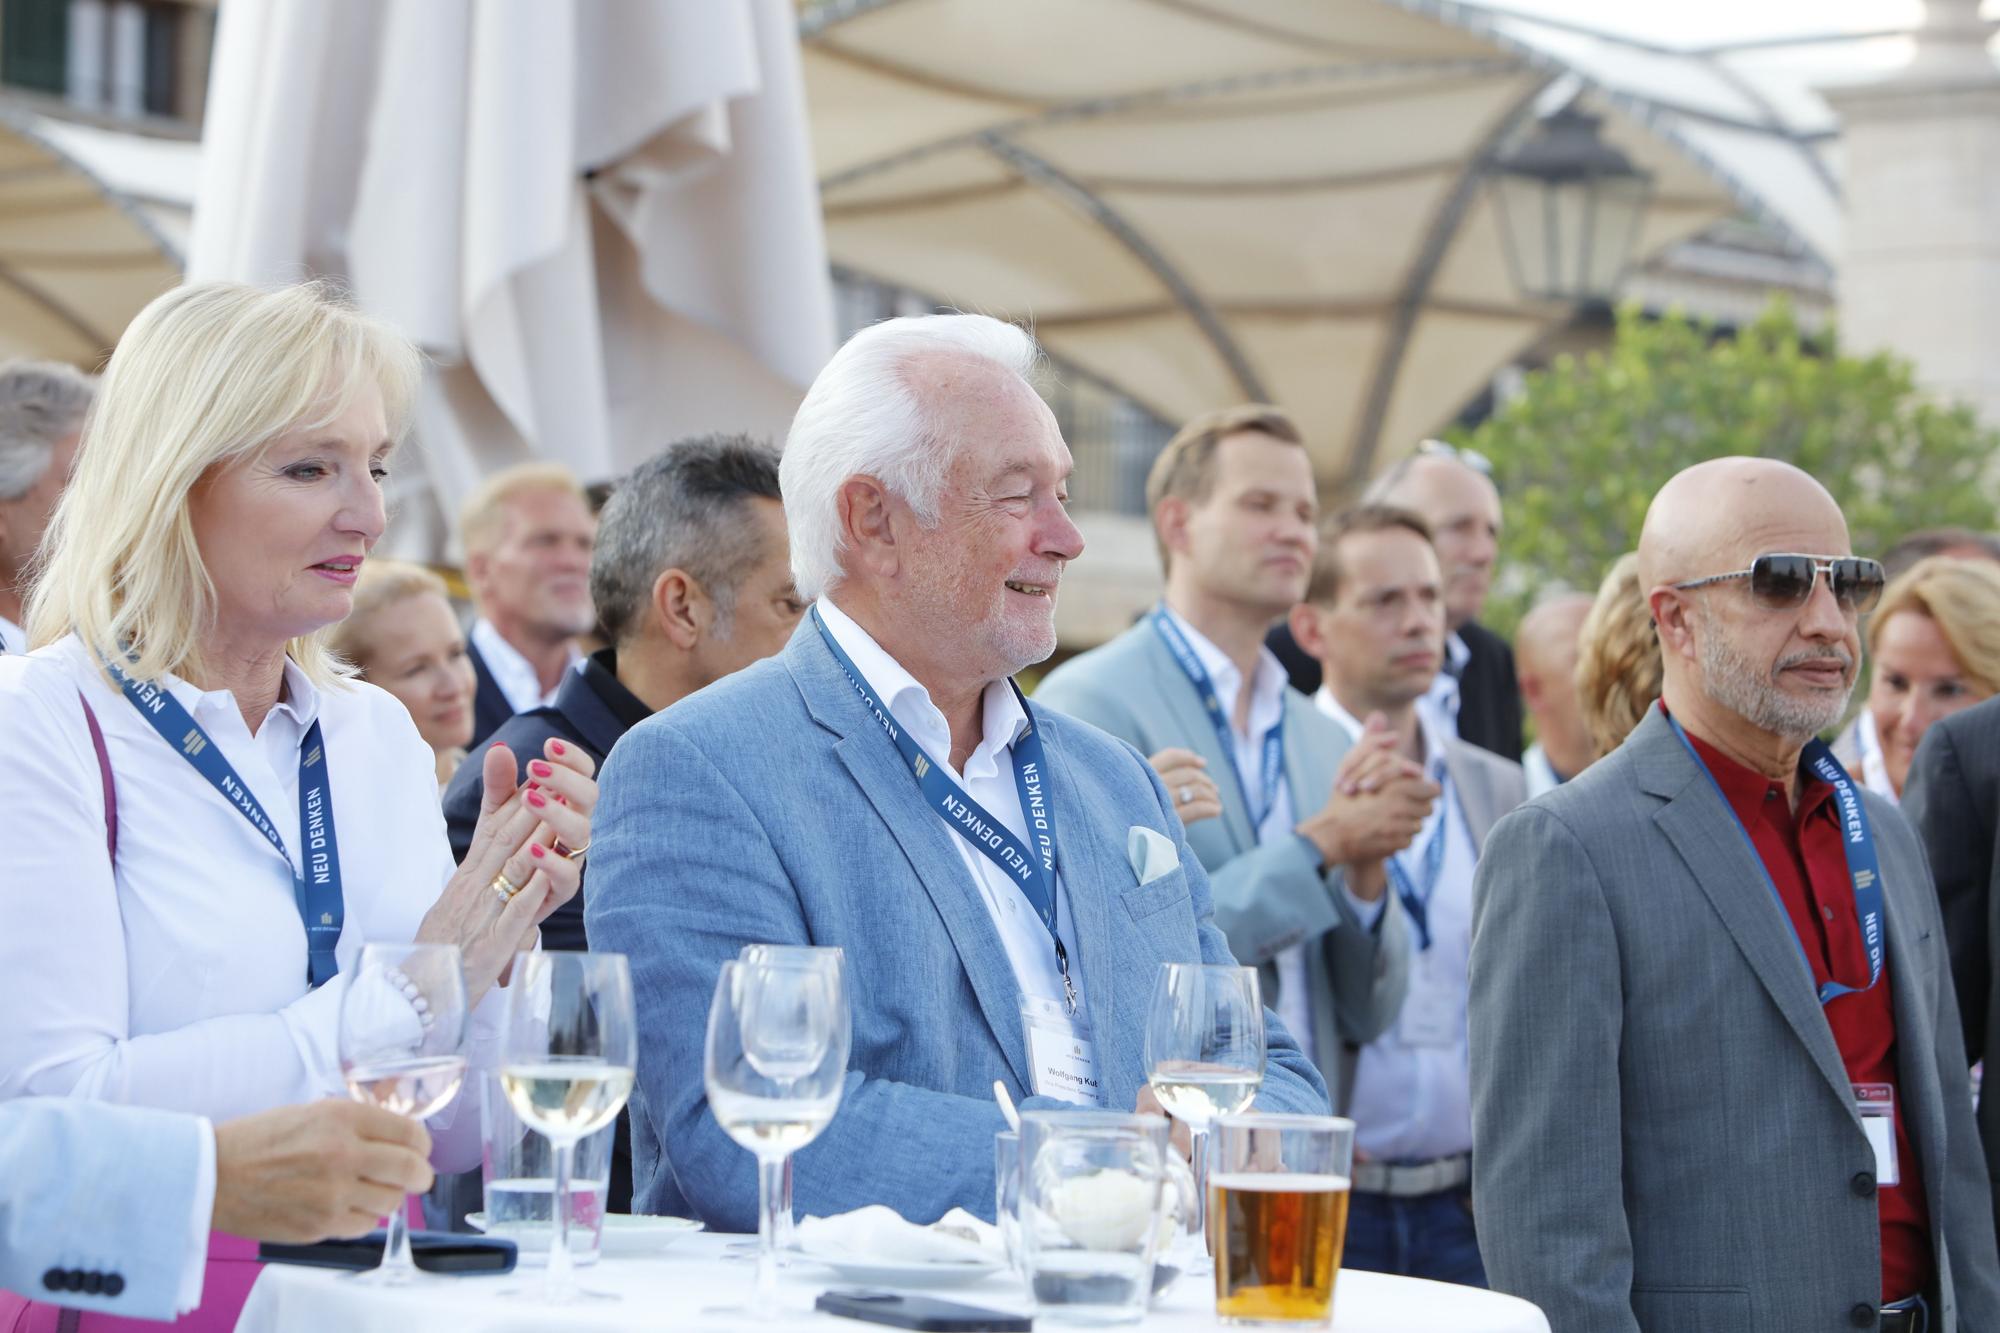 Wirtschaftsforum Neu Denken versammelt deutsche Manager und Politiker auf Mallorca